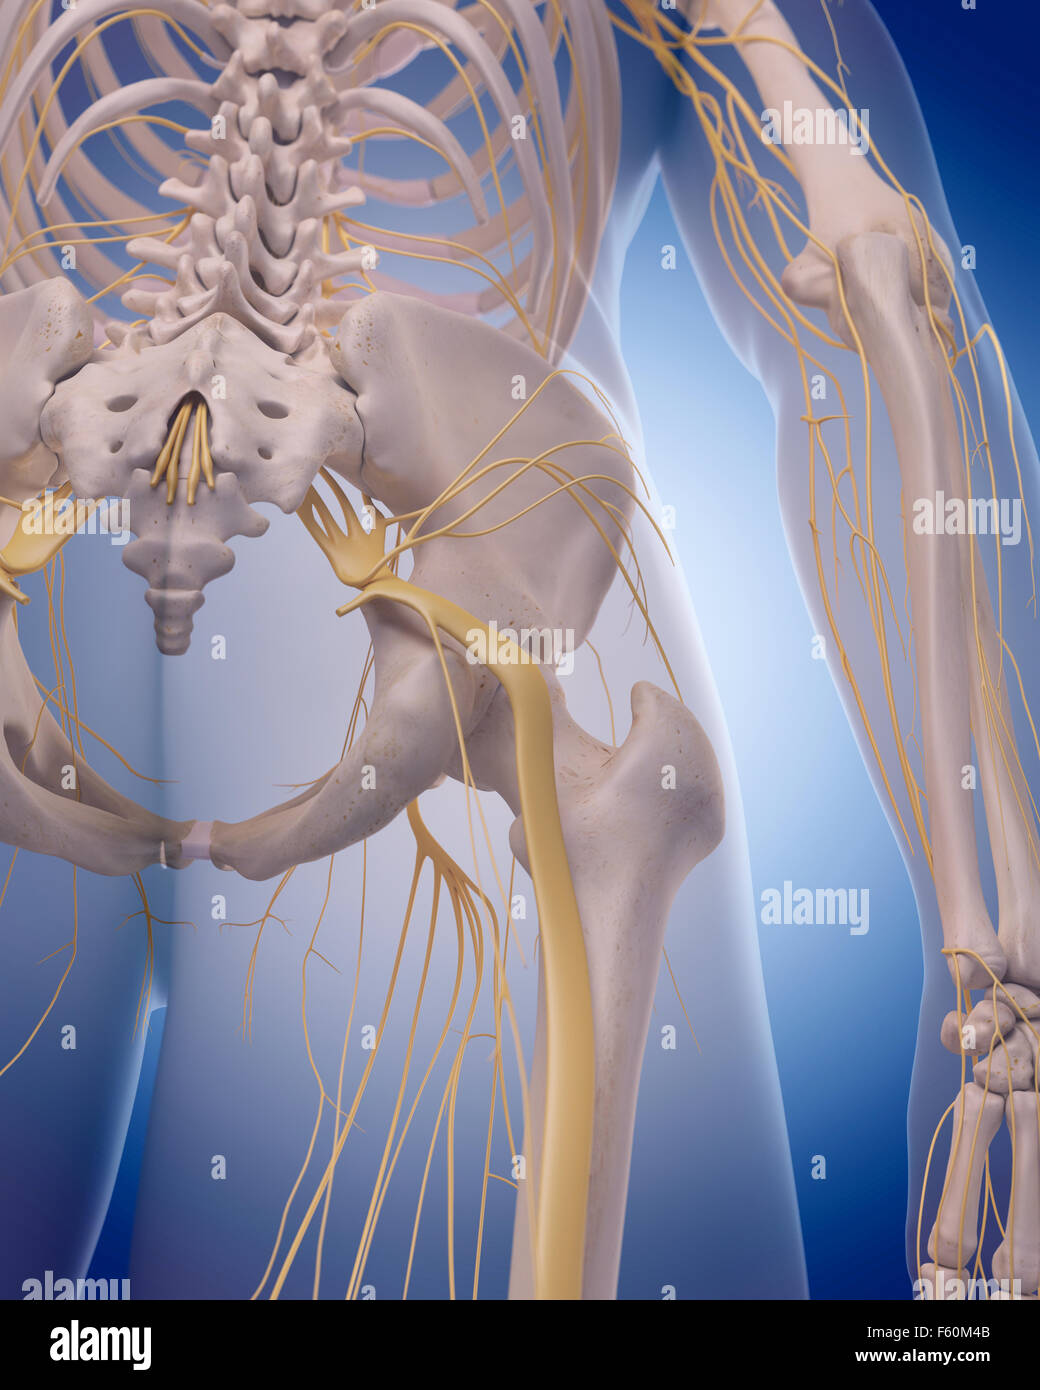 Dal punto di vista medico illustrazione accurata - il nervo sciatico Foto Stock